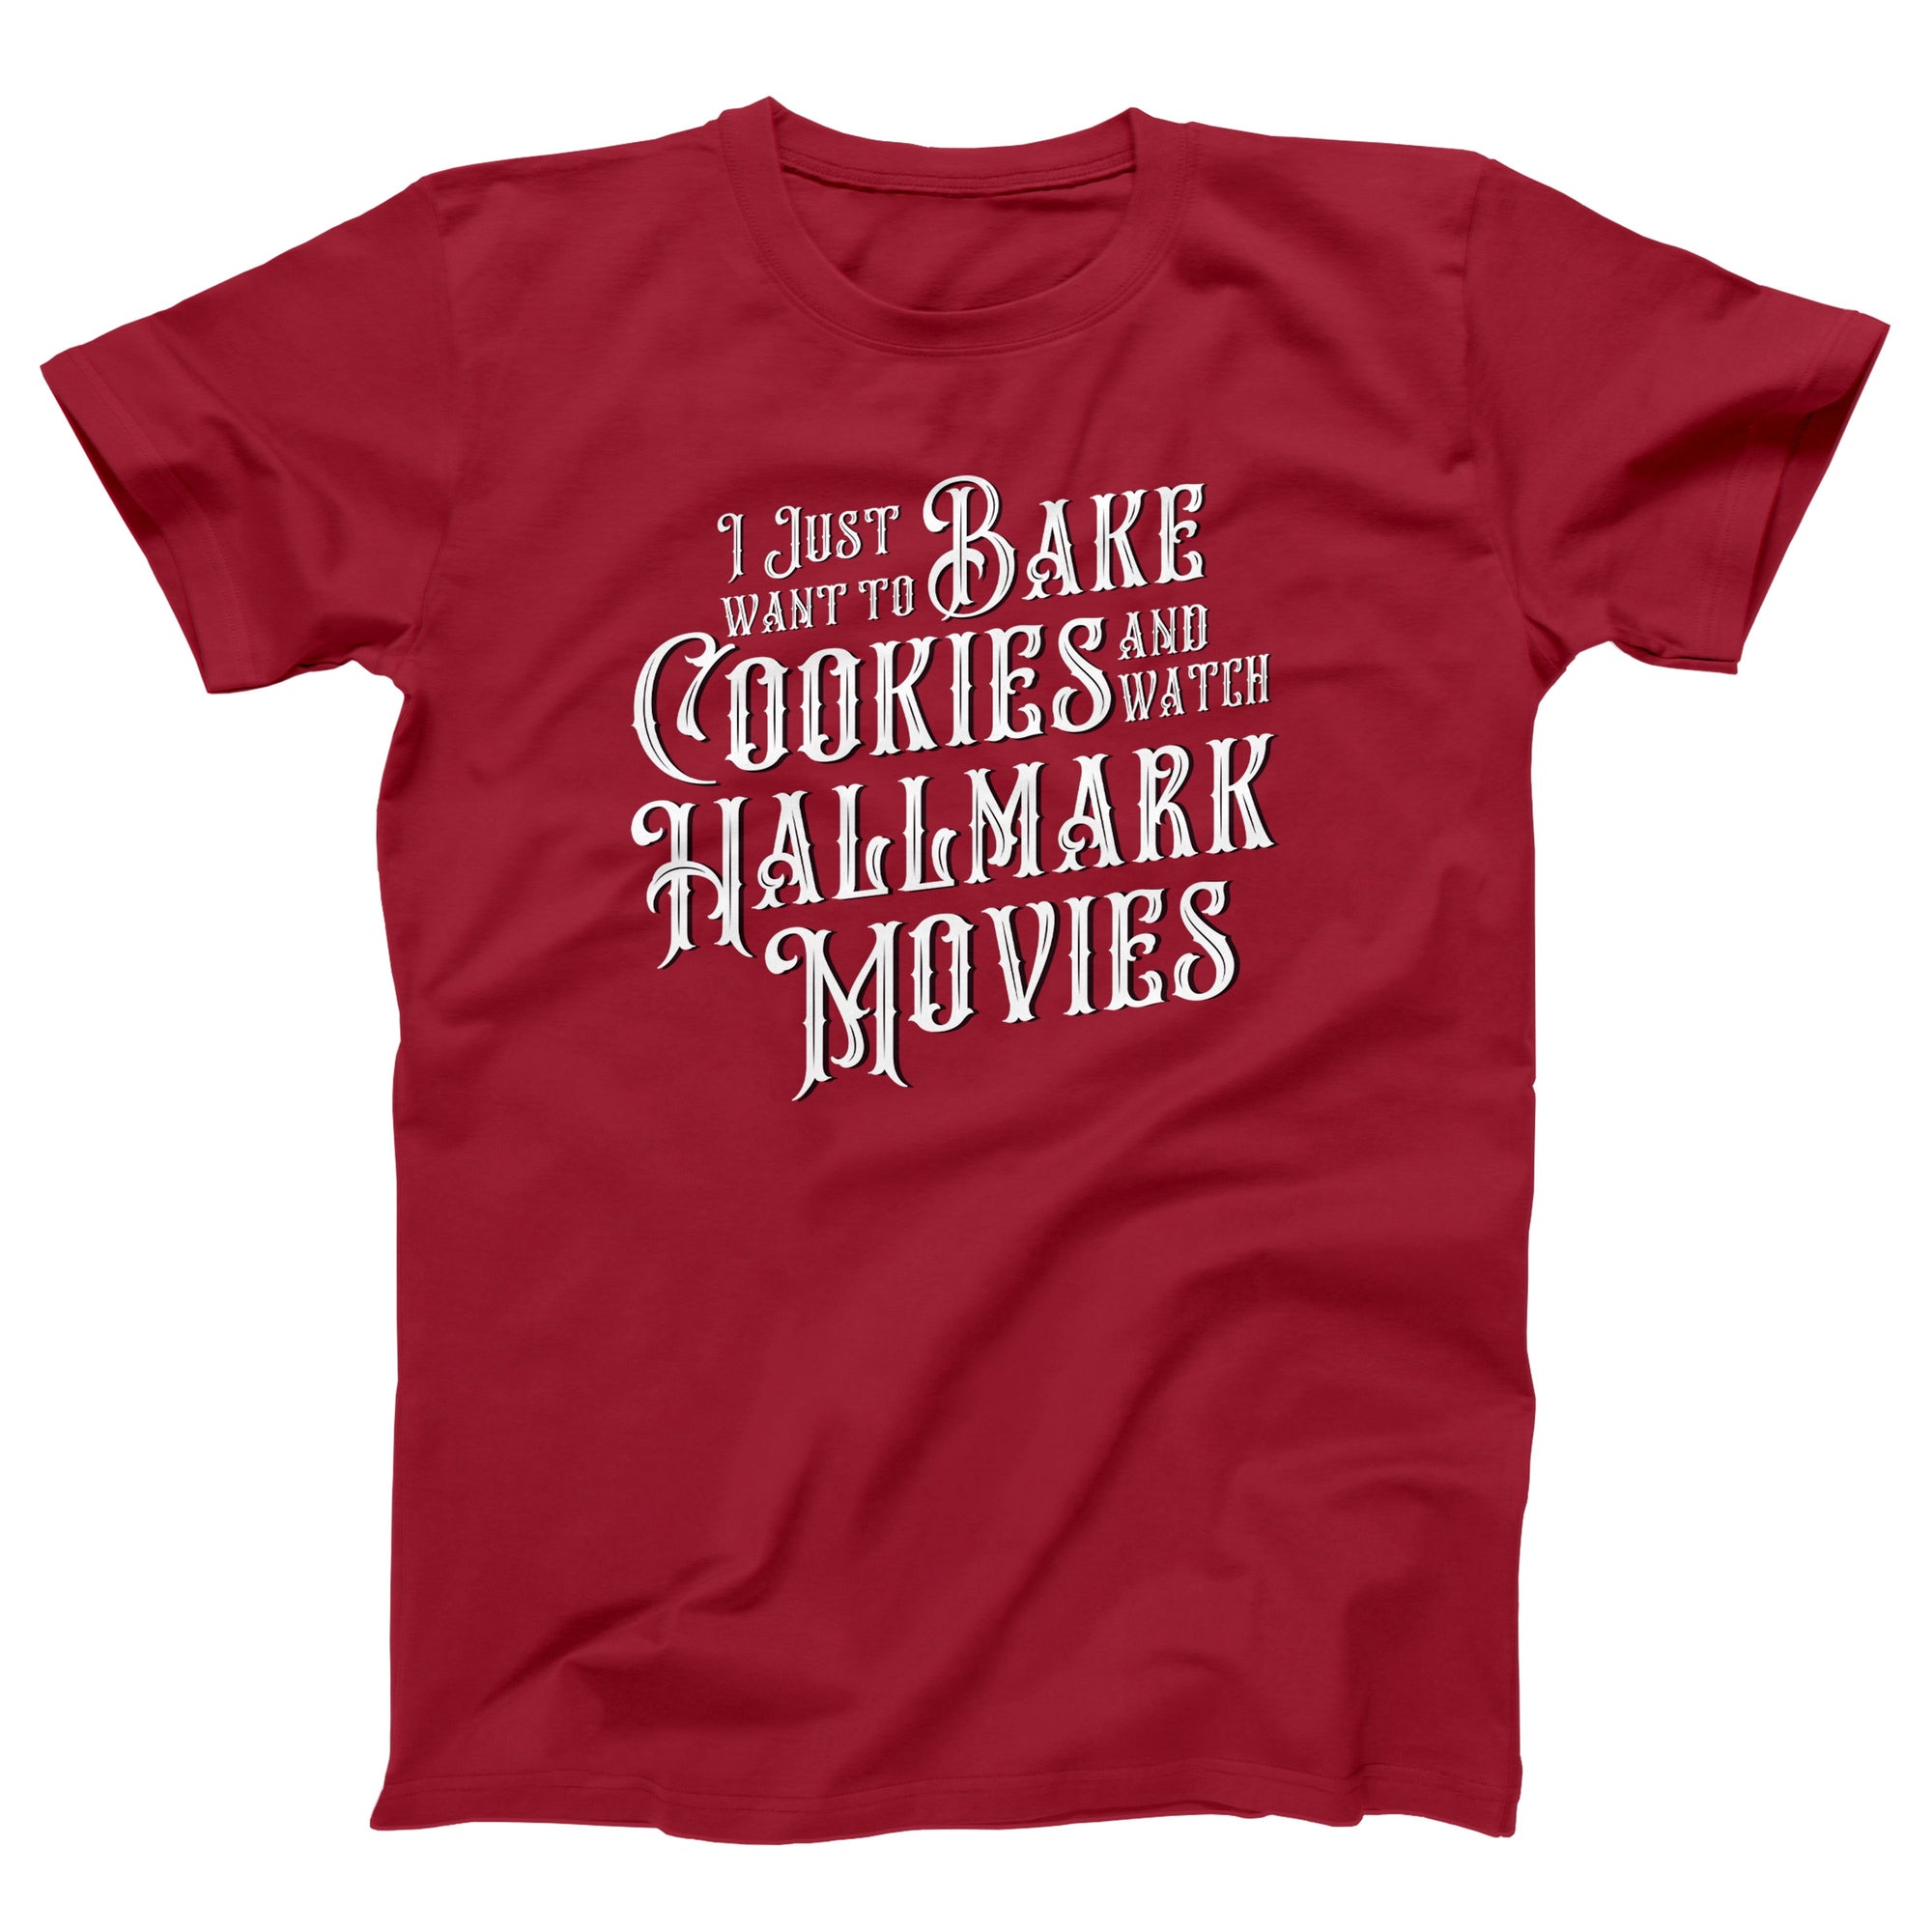 Bake Cookies & Watch Hallmark Movies Adult Unisex T-Shirt - Twisted Gorilla